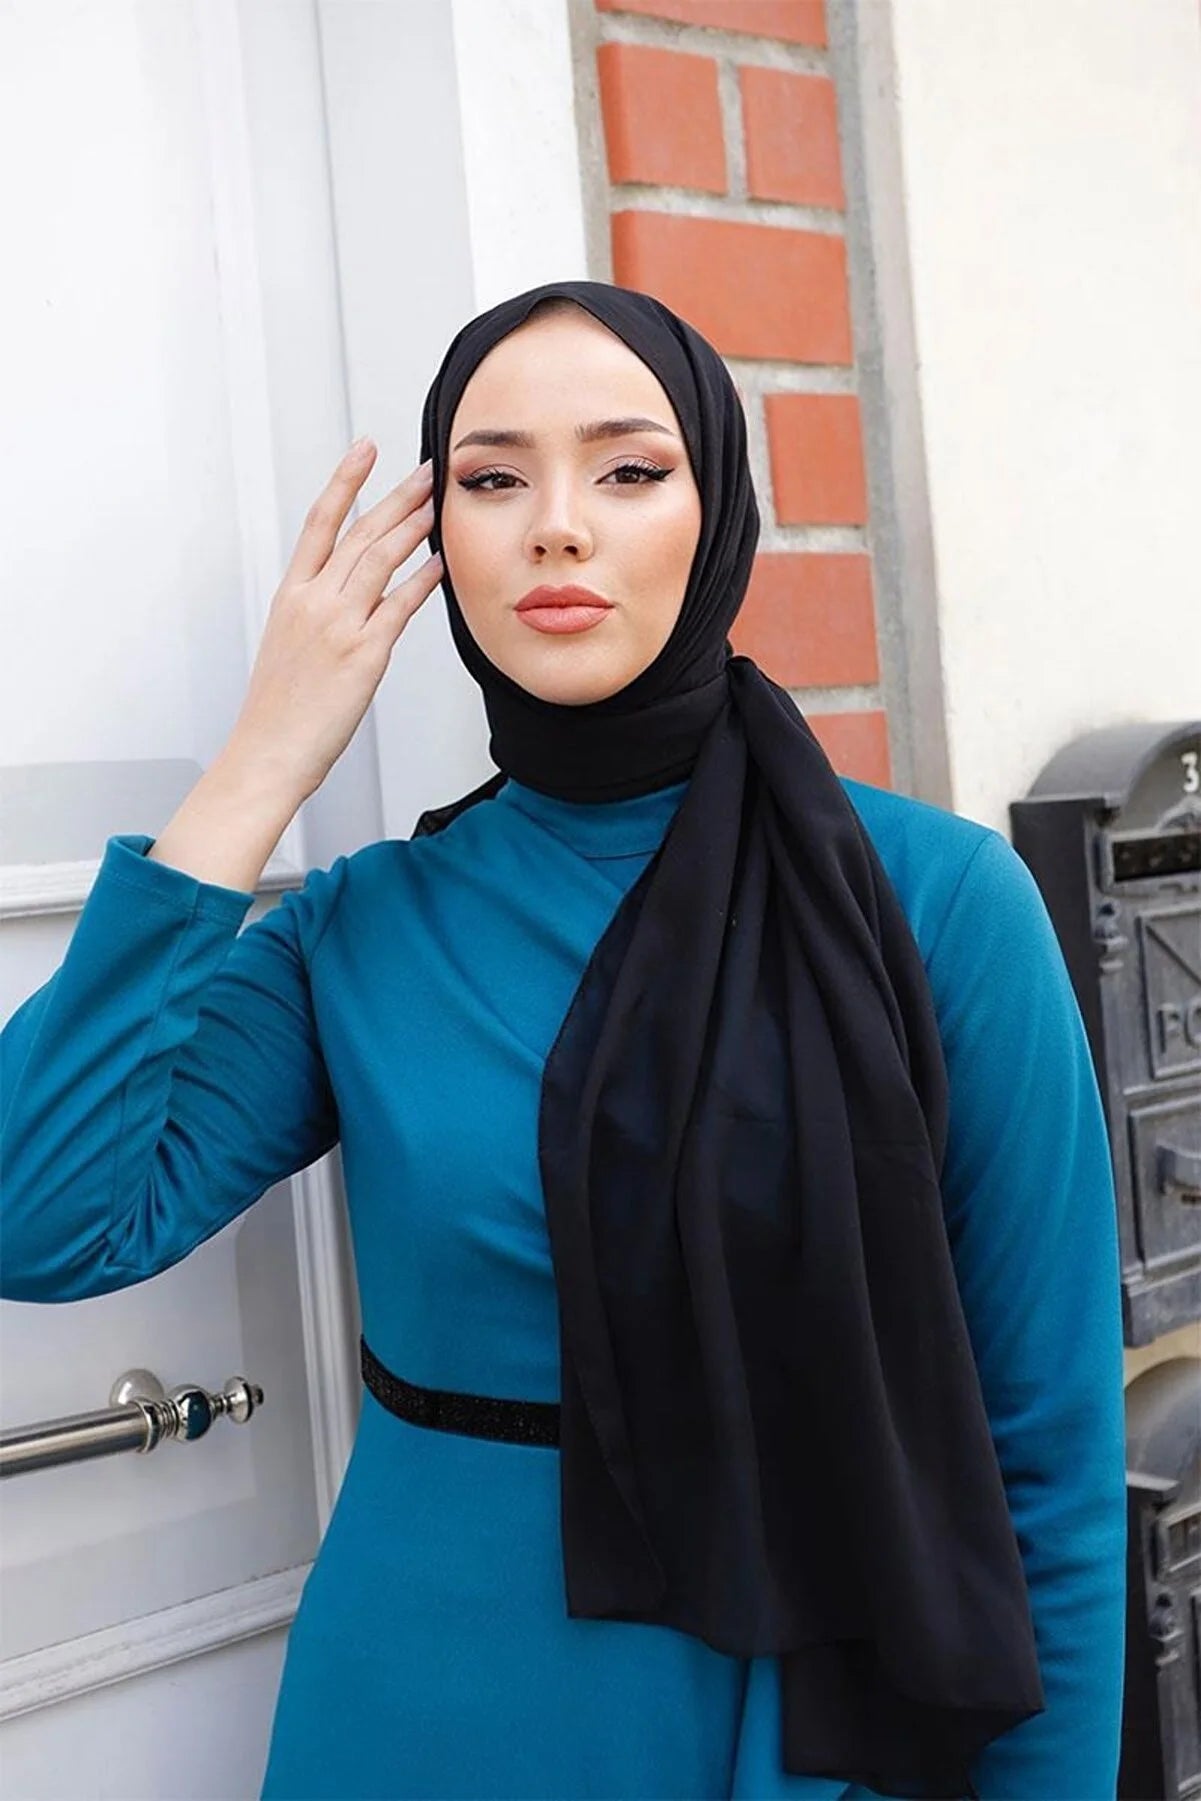 Luxury Chiffon Hijab - Pink Taupe